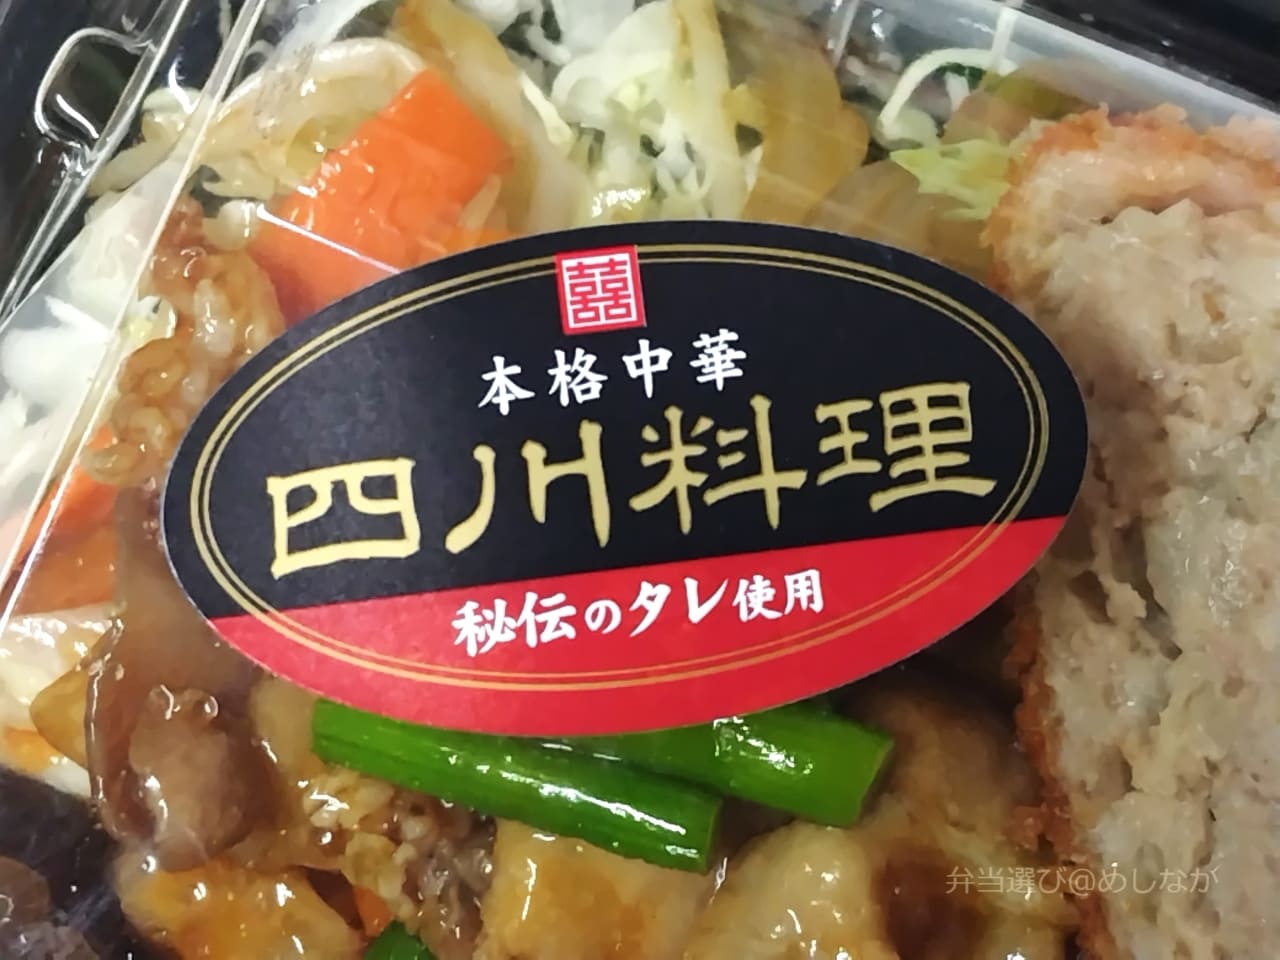 四川野菜炒め＆メンチカツ弁当のフタに貼られたシール